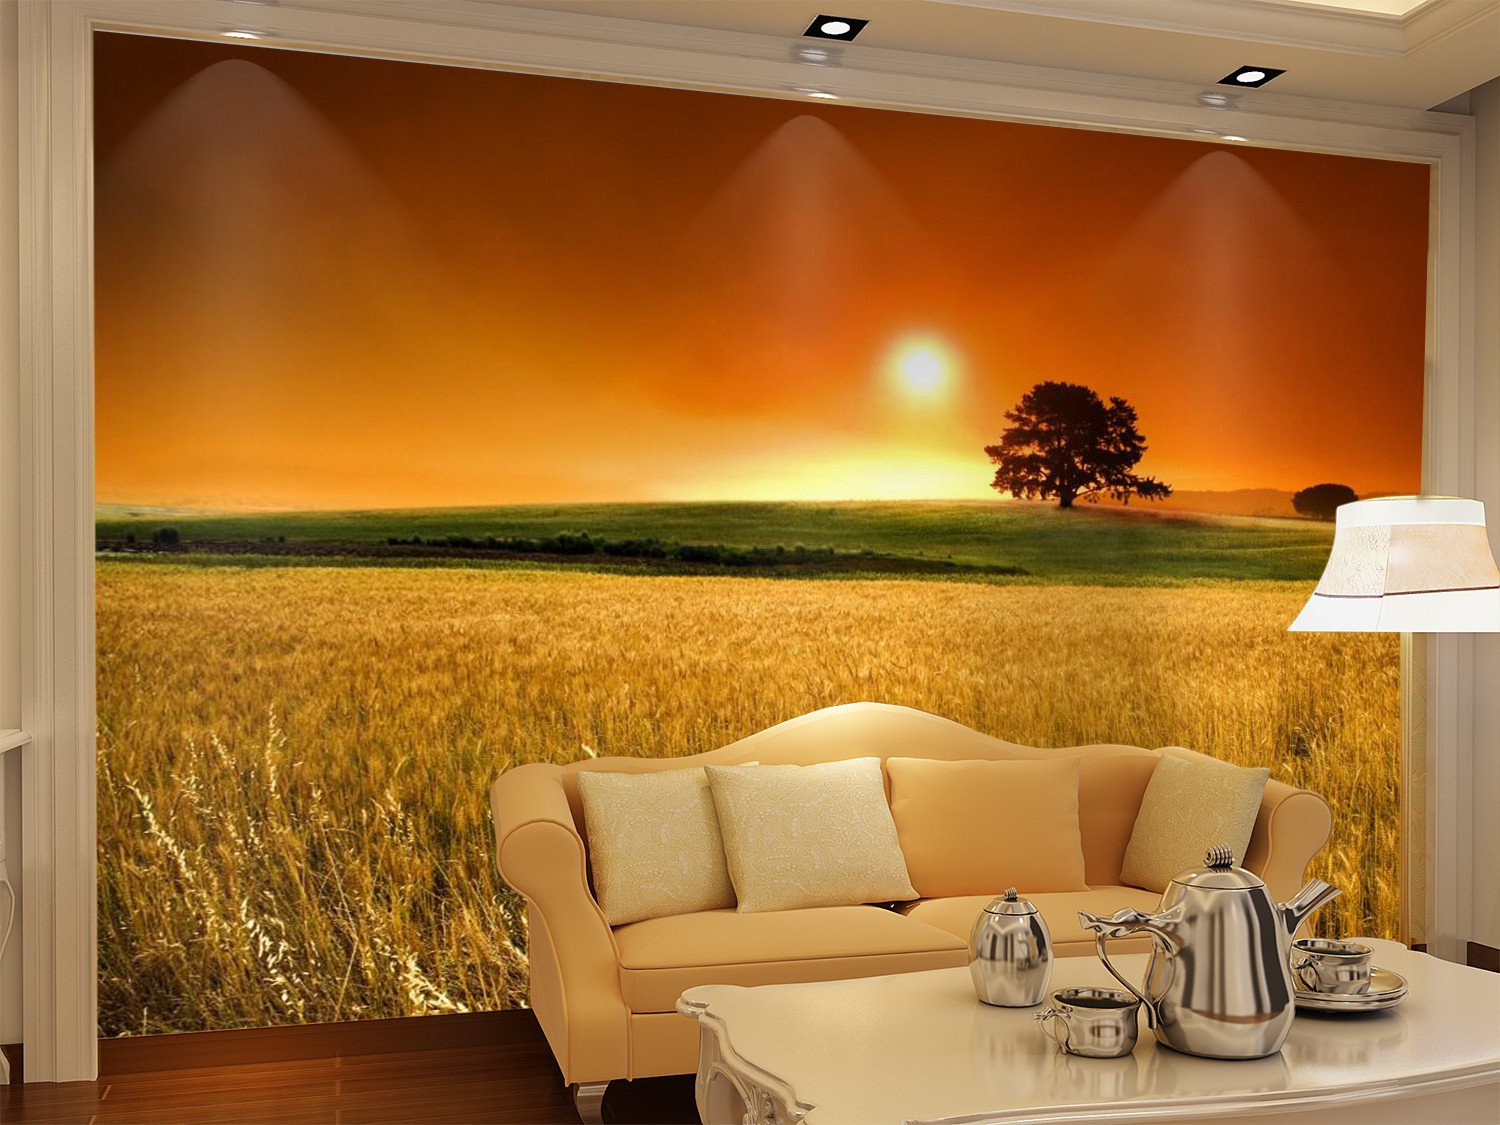 Sunset Glow With Wheat Field 34 Wallpaper AJ Wallpaper 1 